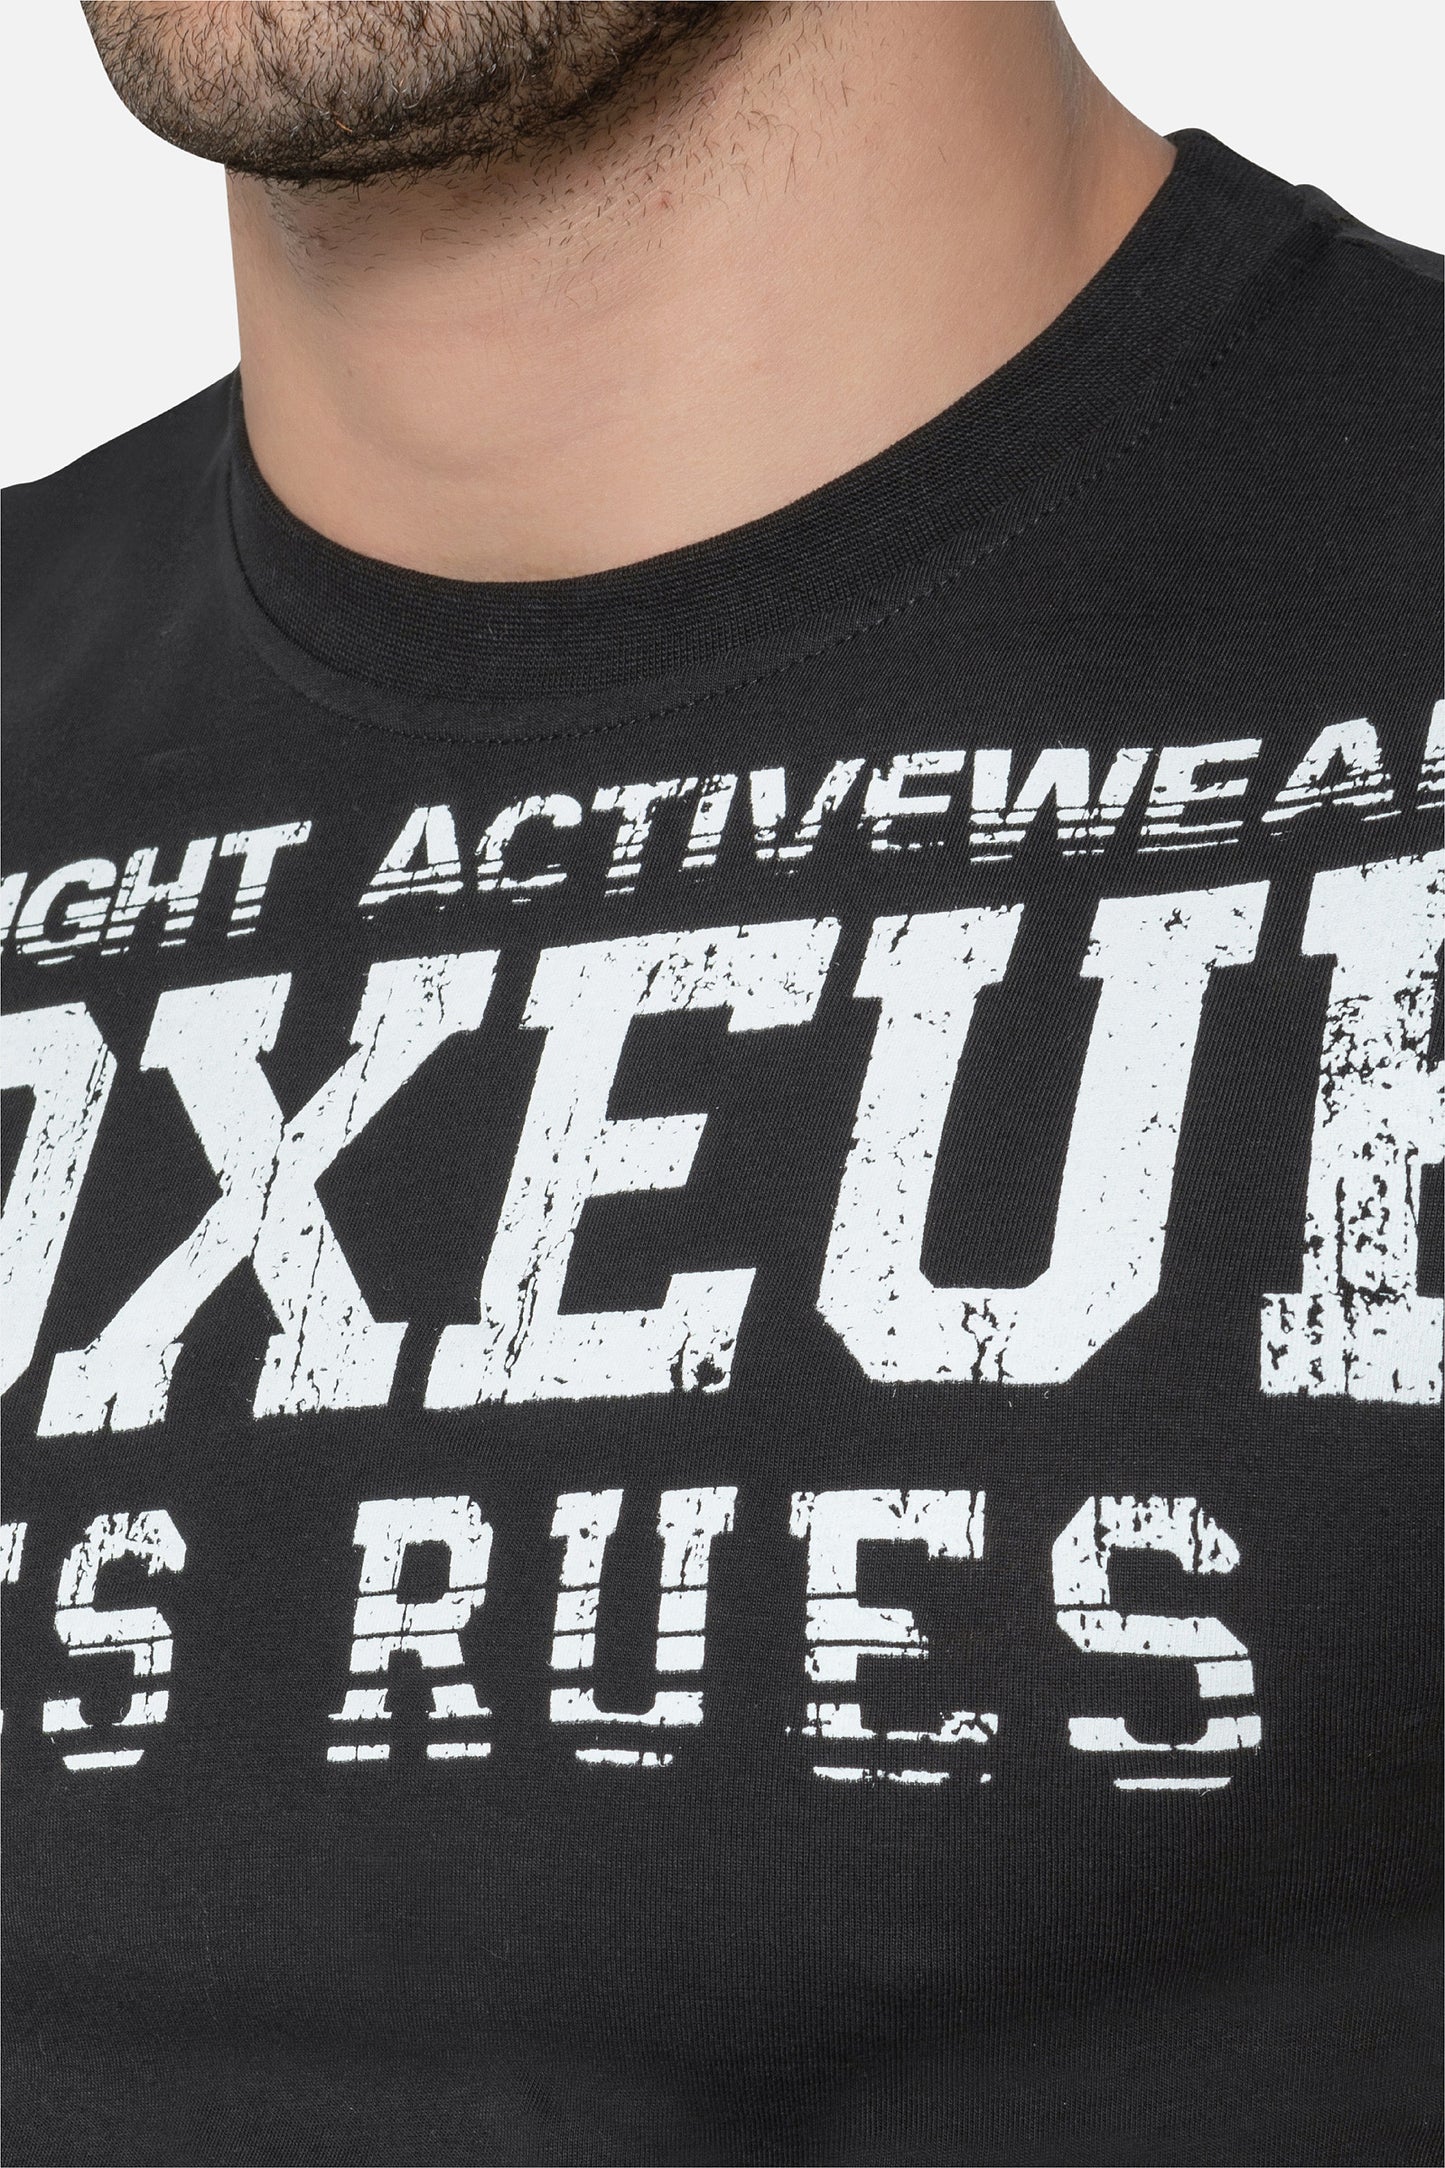 T-shirt Boxeur des Rues Big Logo - Noir